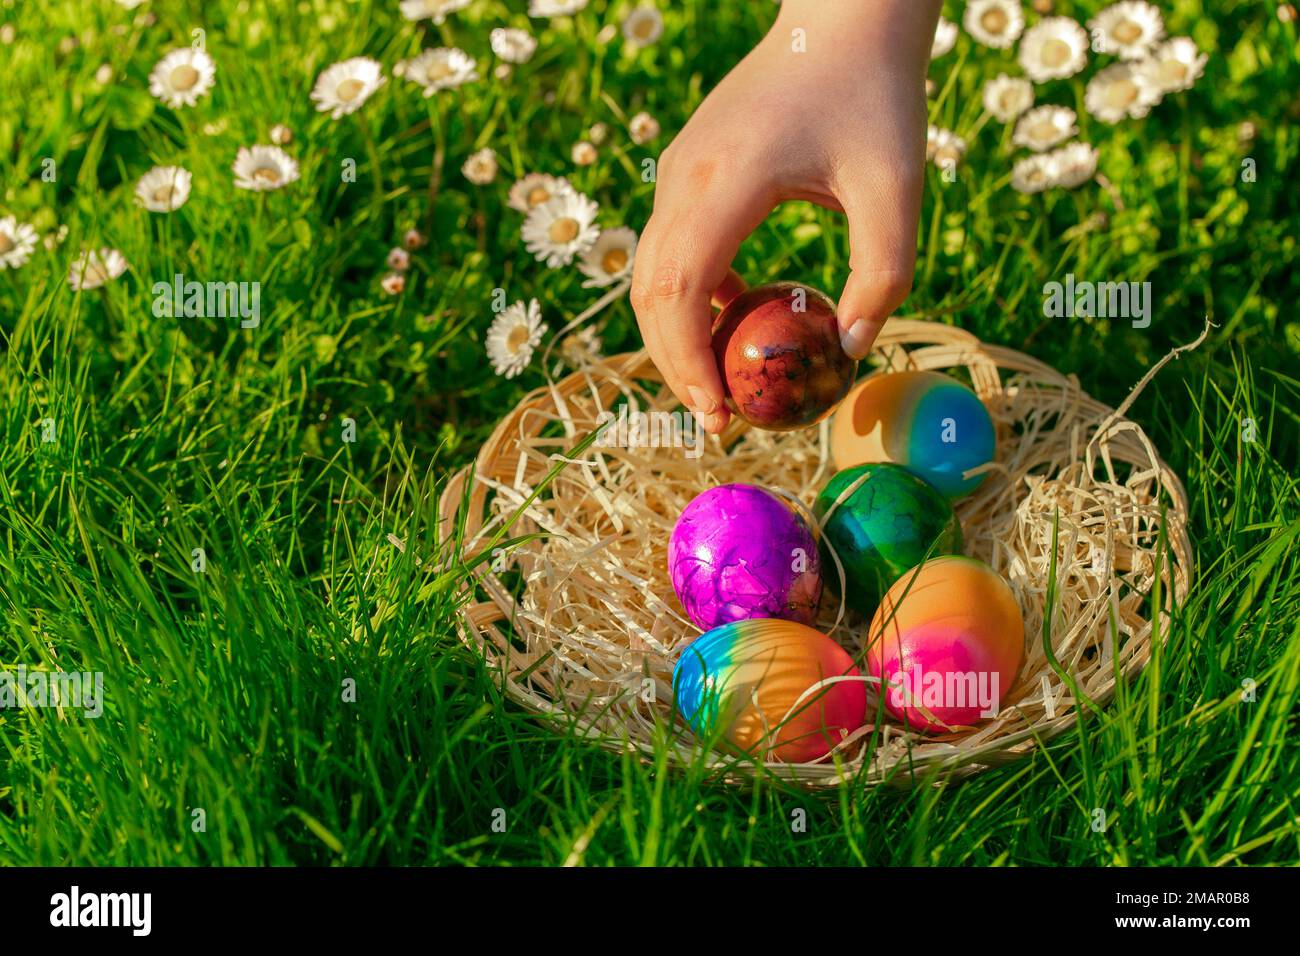 Pasqua vacanza Tradition.Easter Egg Hunt.child raccoglie uova colorate in un prato di primavera con daisies.Childs mano mette uova colorate in un basket.Spring Foto Stock